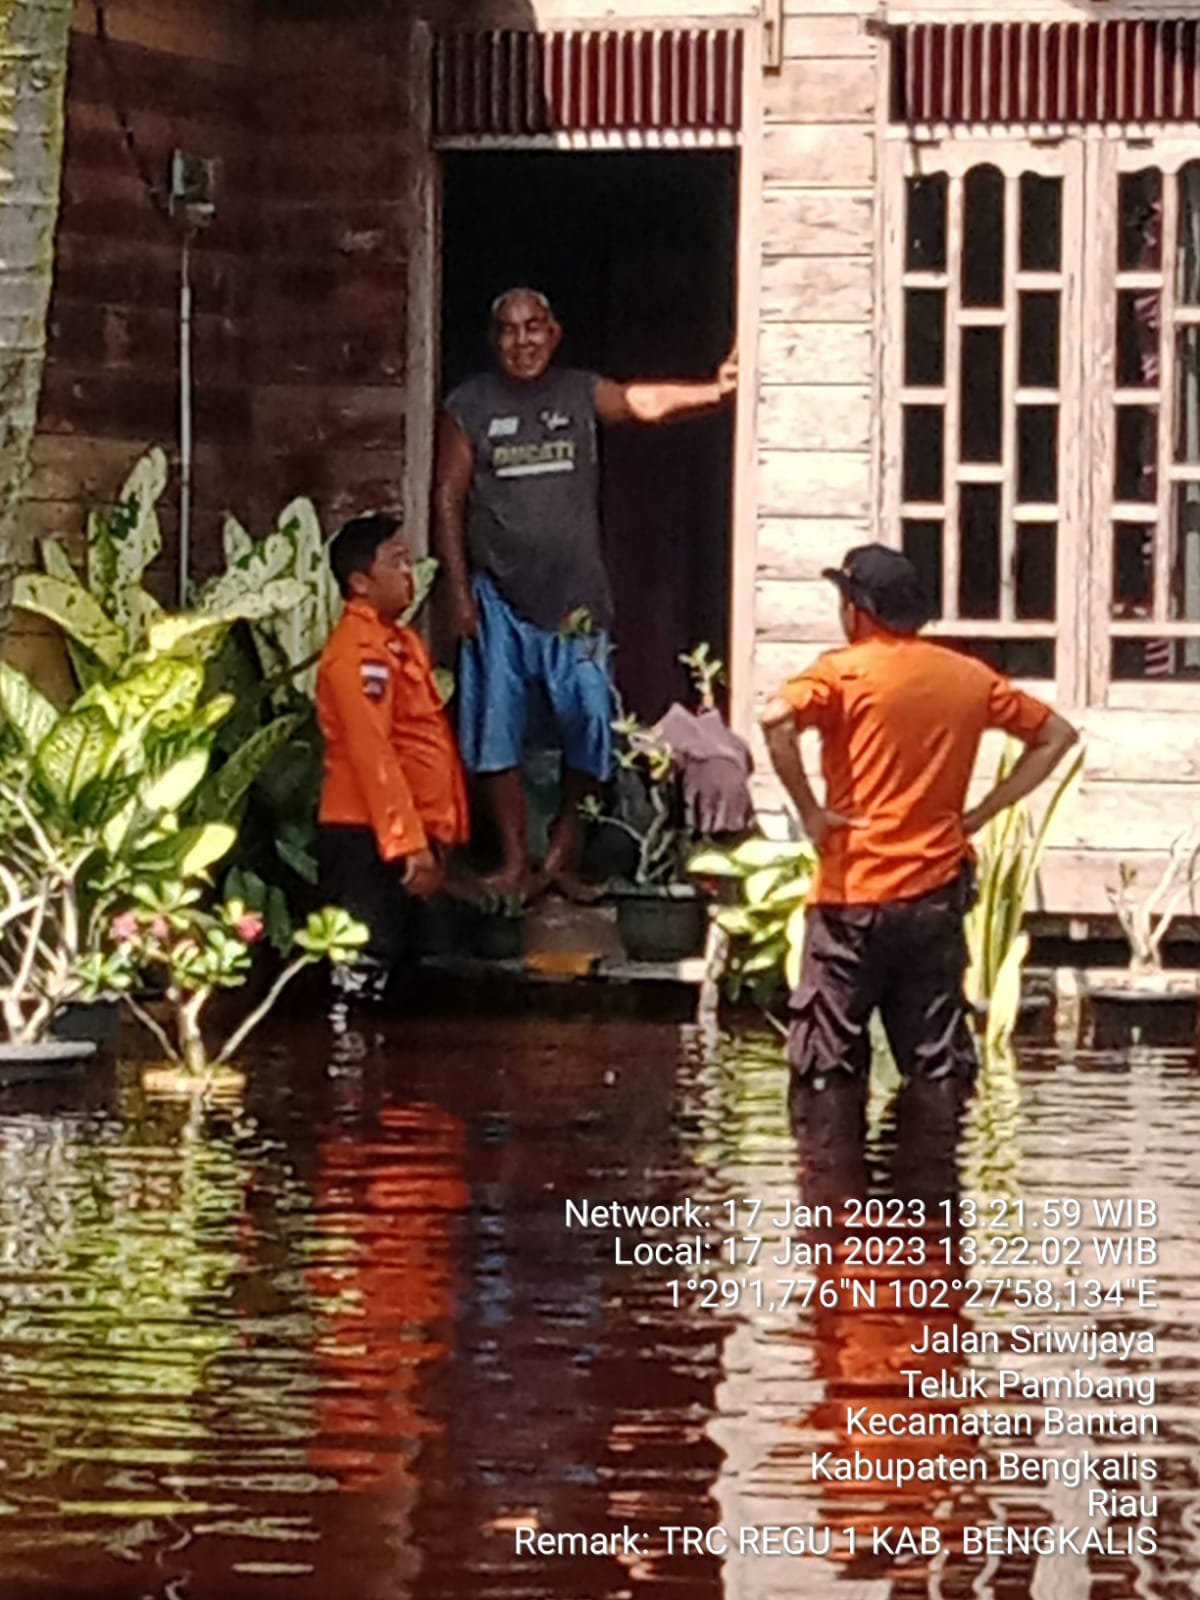 Akibat Hujan Intensitas Tinggi, 10 Rumah Warga Tergenang Air di Desa Pambang Baru Bantan